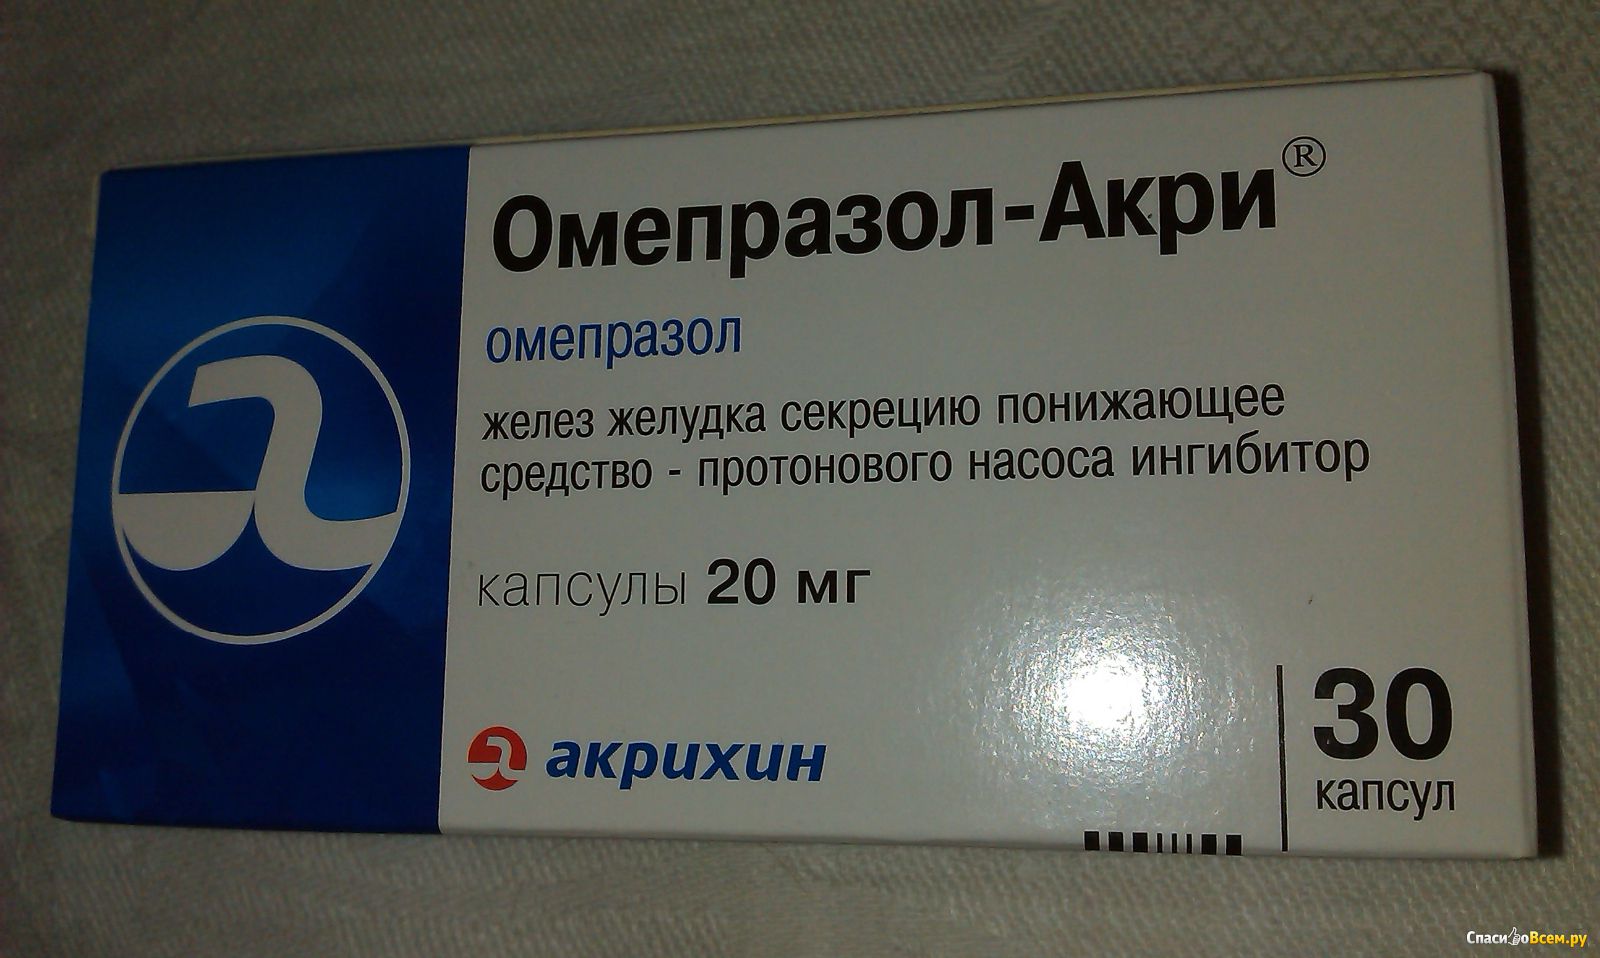 Можно собаке омепразол. Омепразол. Таблетки для желудка Омепразол. Лекарство от желудка Омепразол. Омепразол Акрихин производитель.